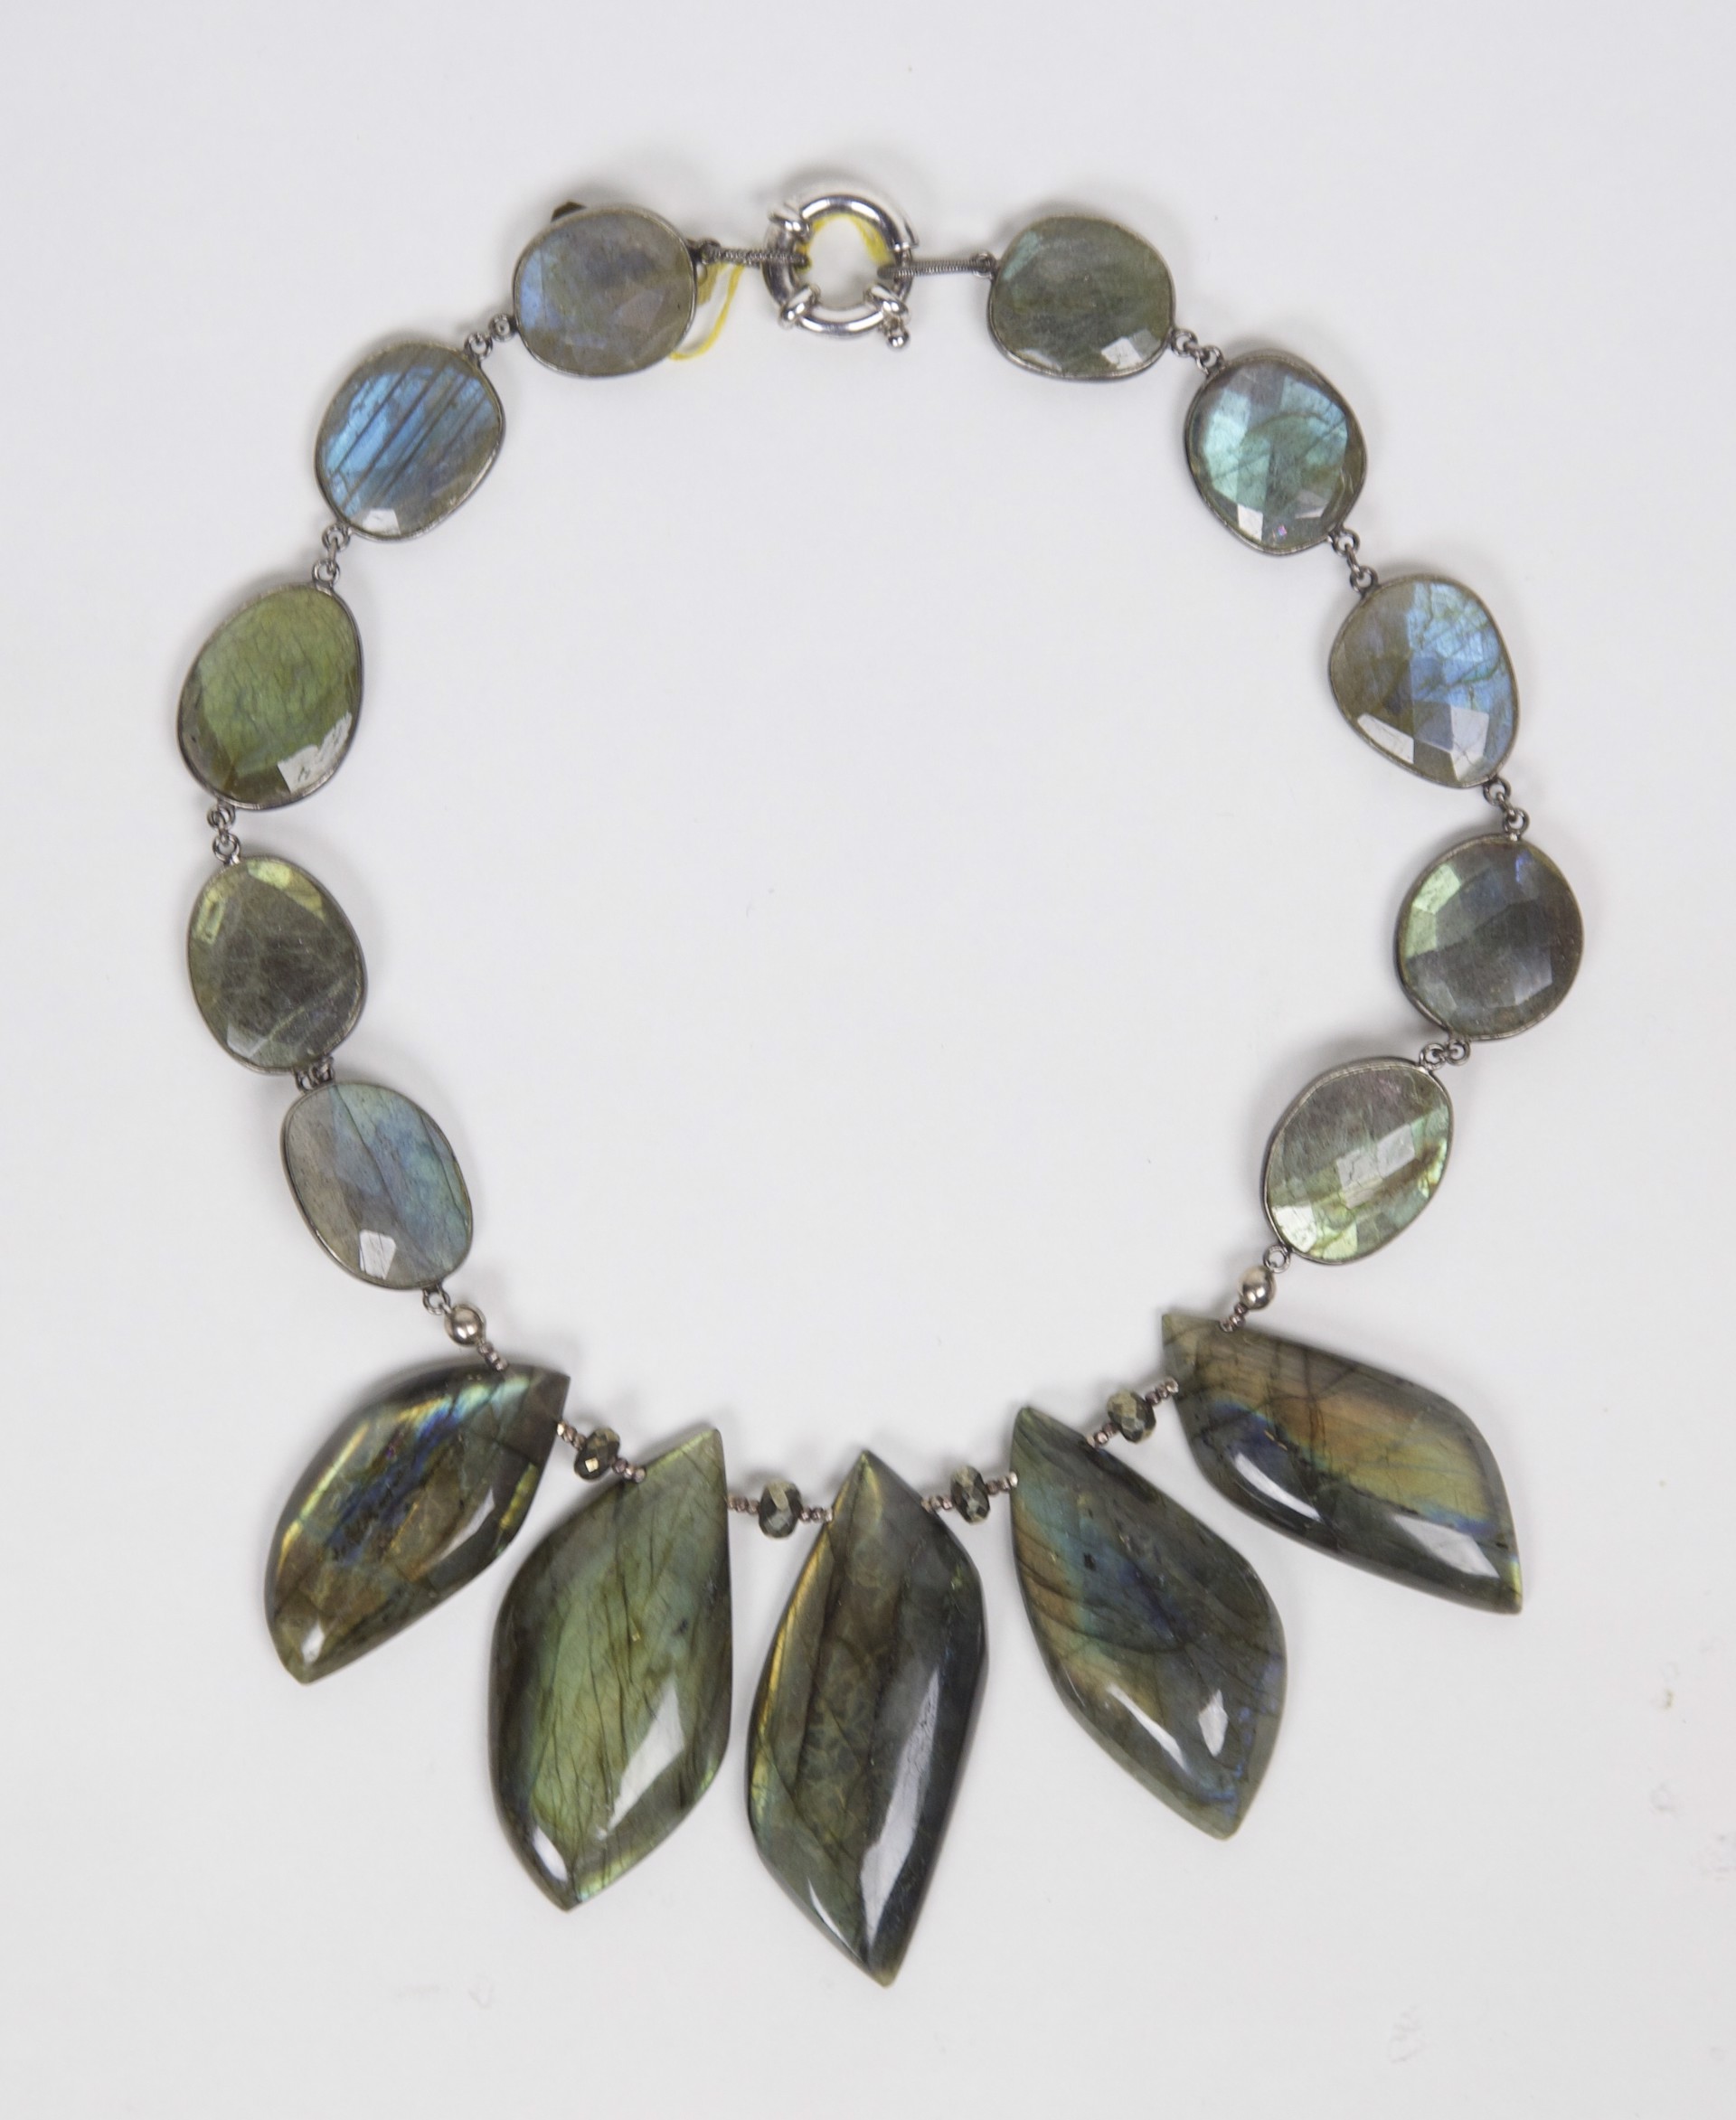 Labradorite and hematite beads on sterling silver choker by Jeri Mitrani